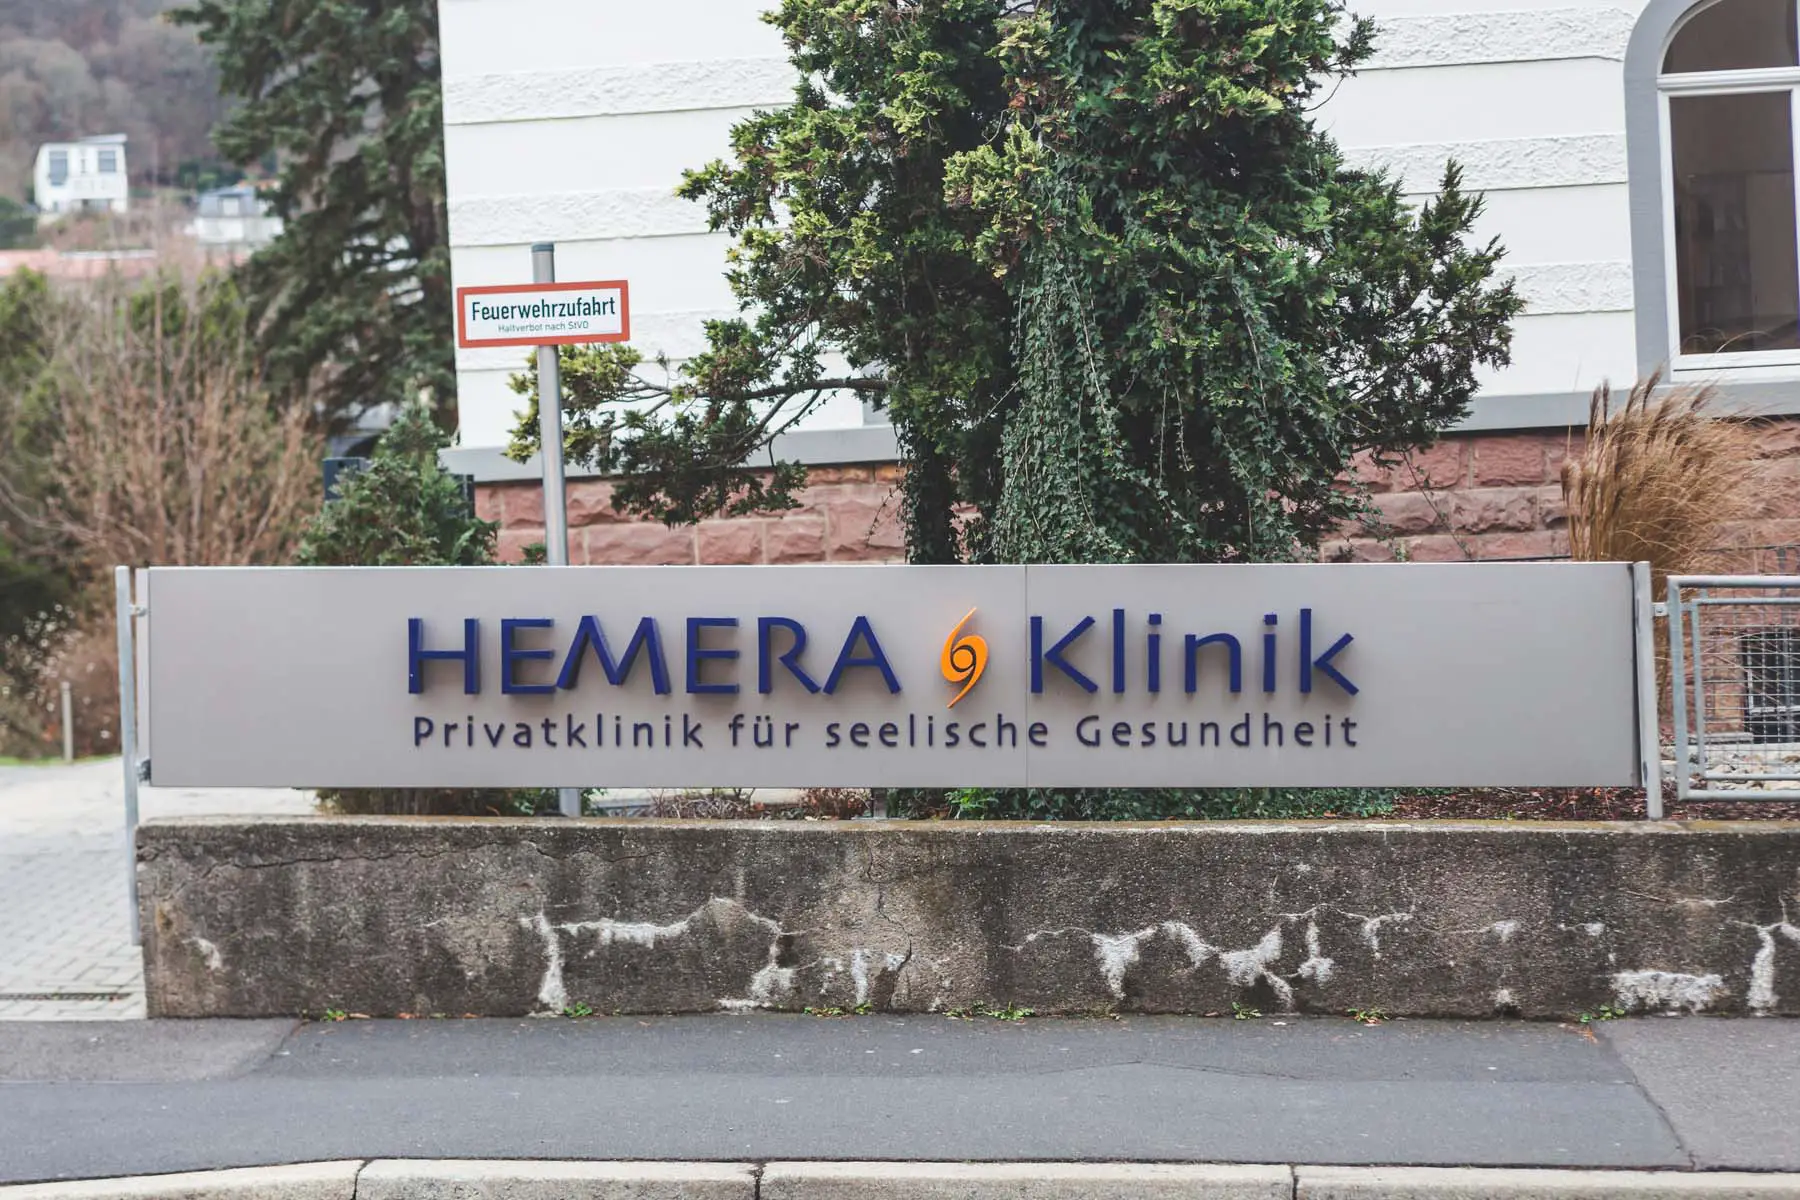 A sign outside the Hemera Klinik in Bad Kissingen reads 